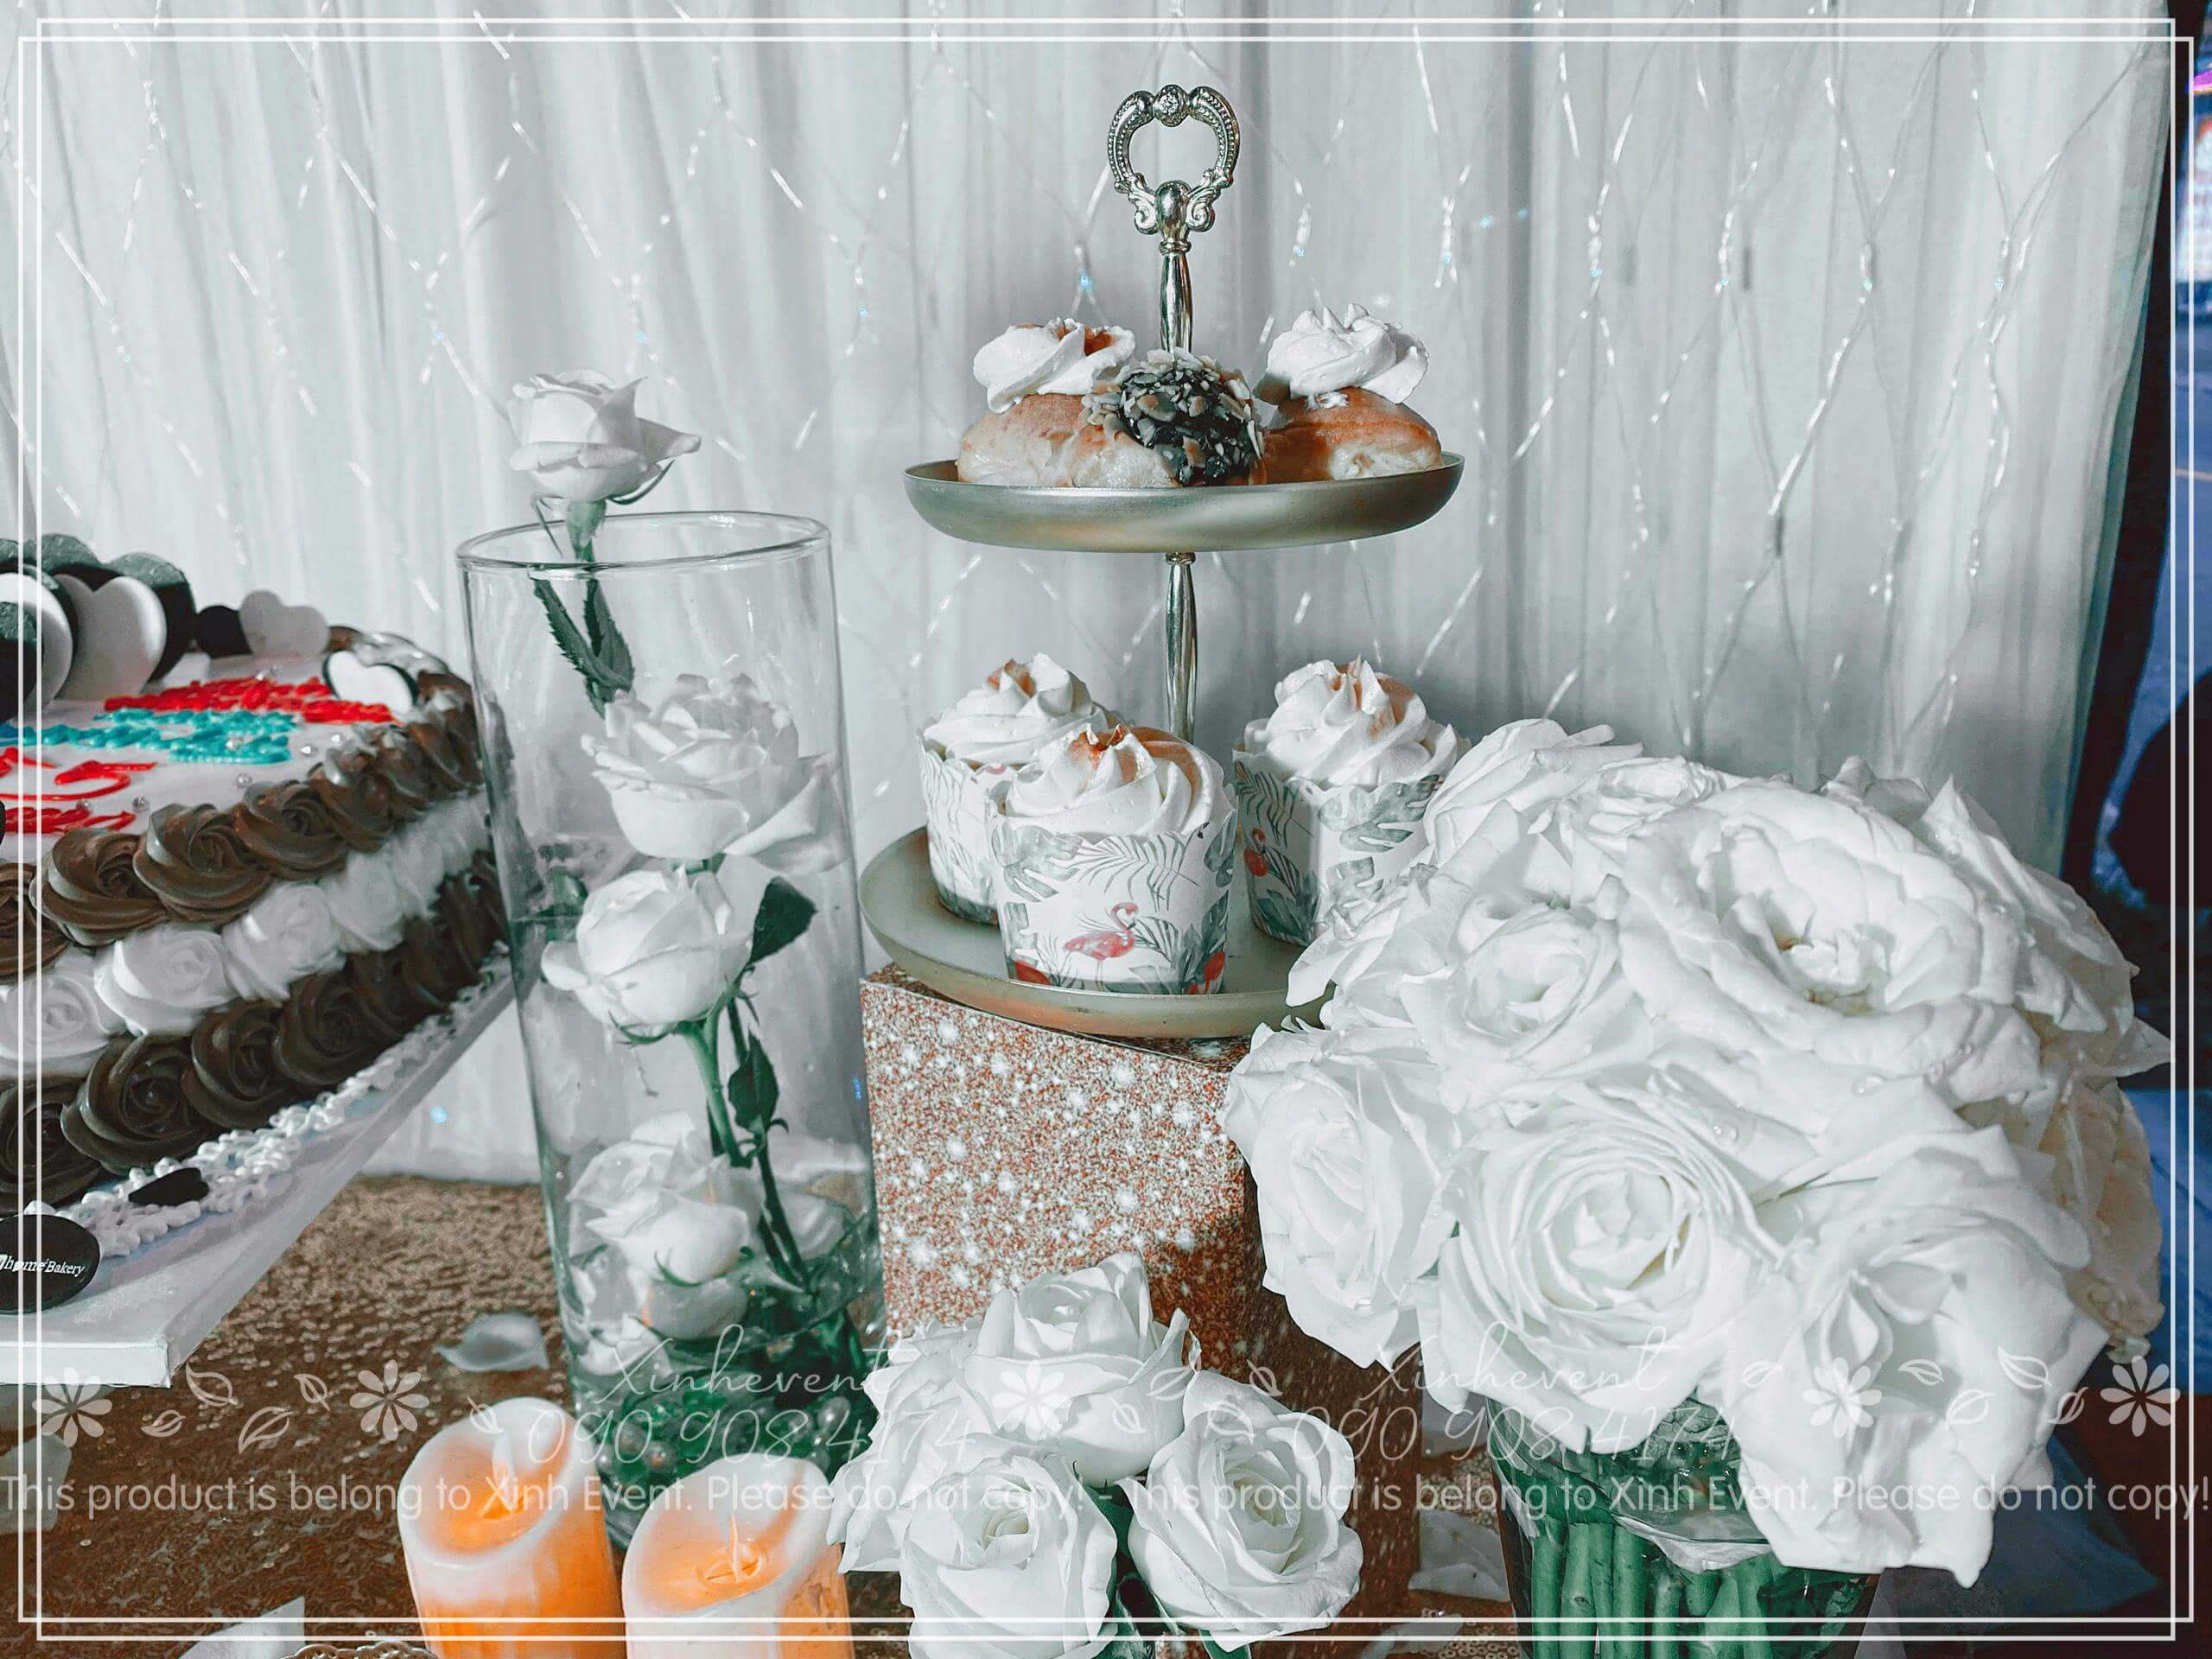 Dùng hoa hồng trắng để trang trí bàn tiệc thật sang trọng